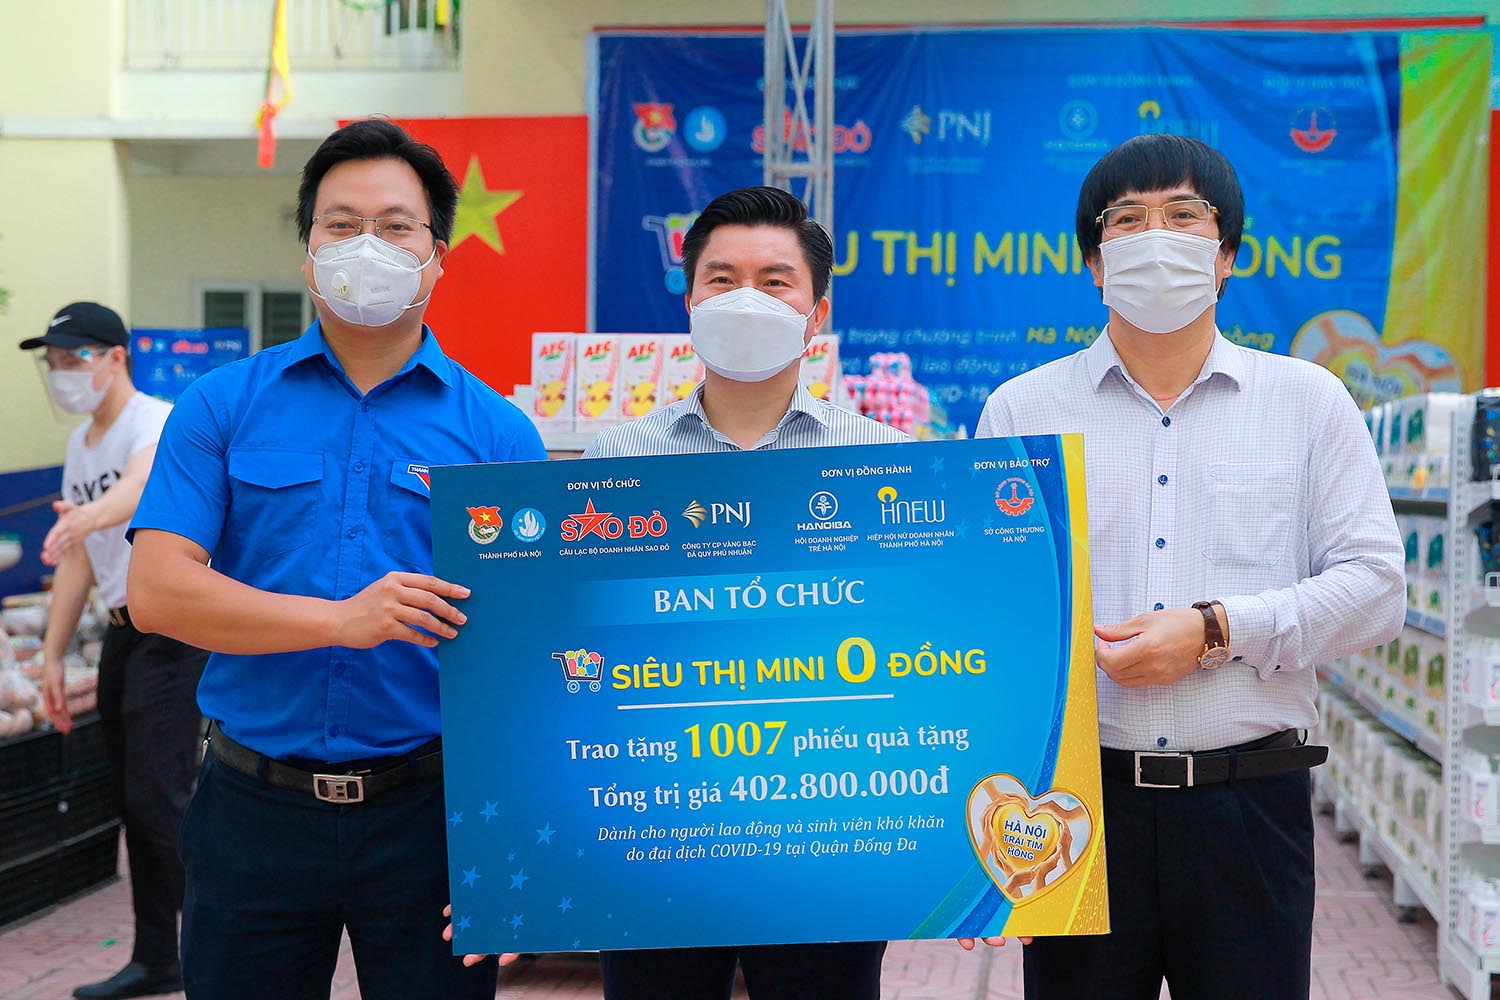 “Siêu thị mini 0 đồng” tại Quận Đống Đa do Tập đoàn Phú Thái tài trợ, tổ chức vận hành. Tổng số tiền hỗ trợ tại siêu thị này là 402 triệu đồng.